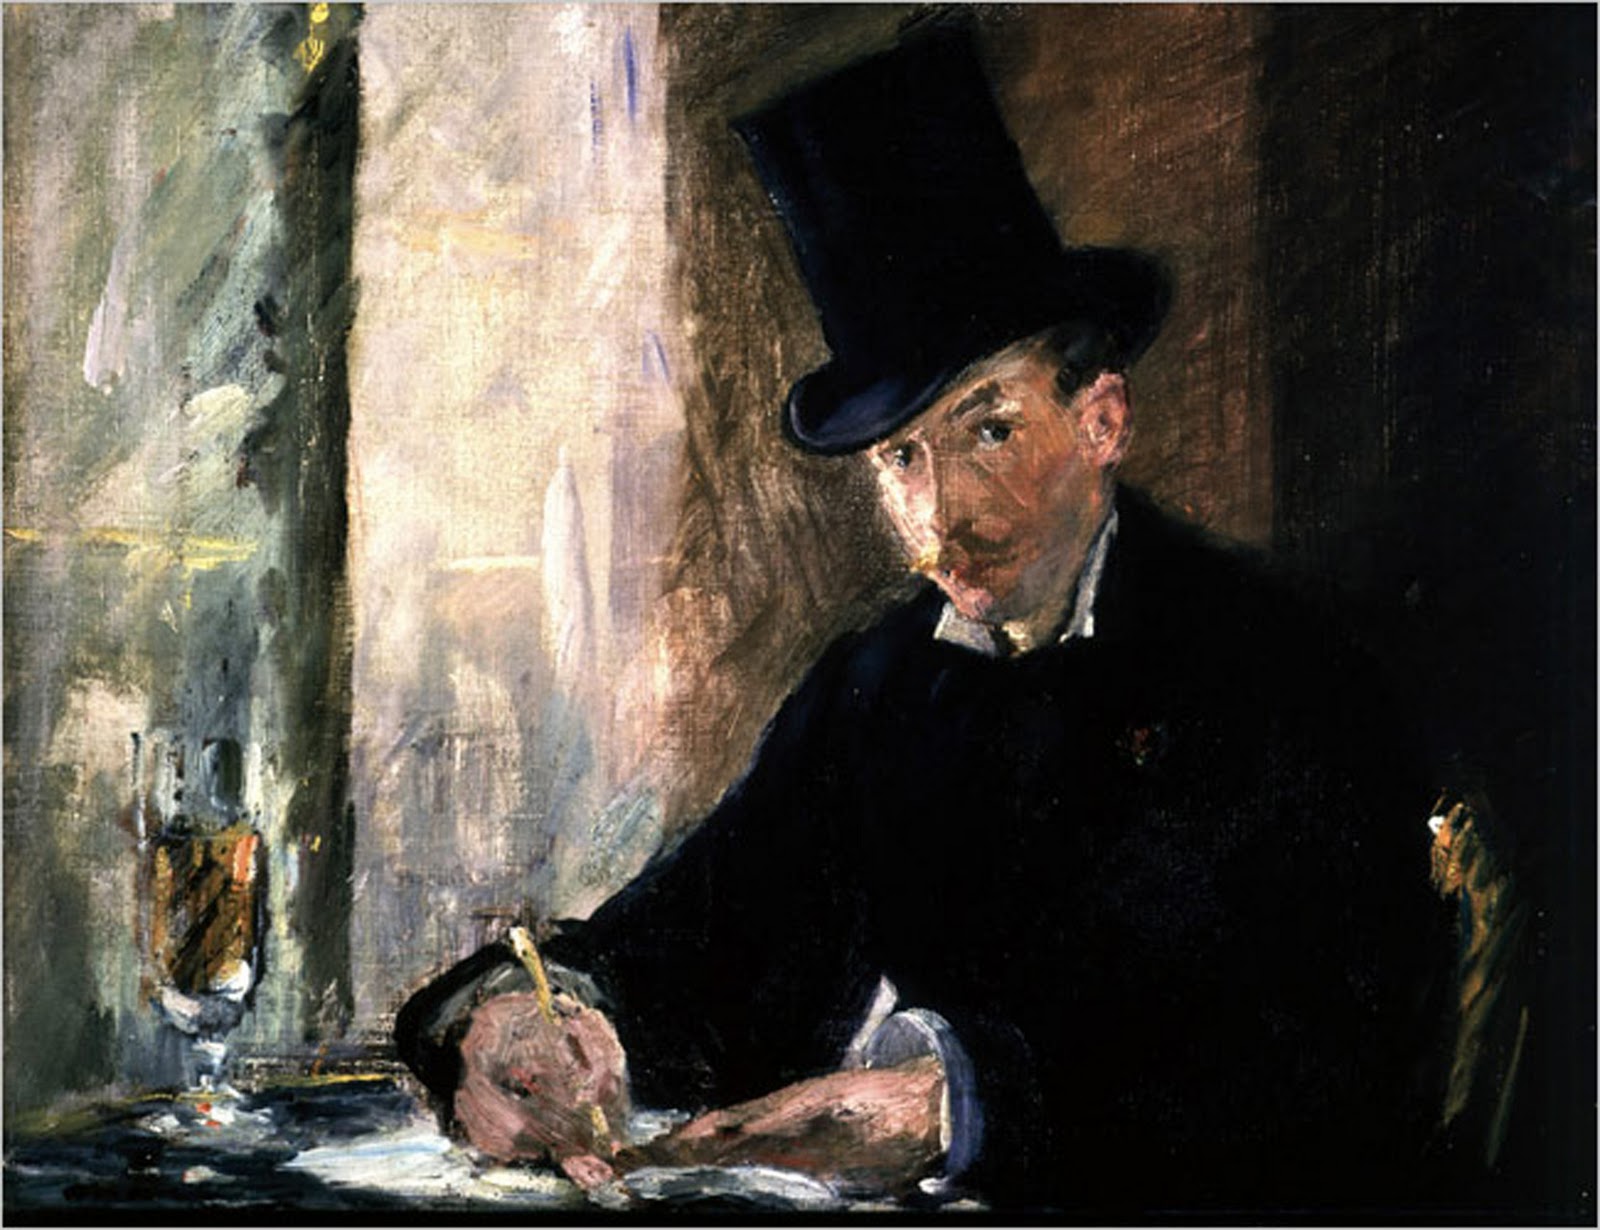 Chez Tortoni by Édouard Manet - c. 1879 - 26 x 34 cm 